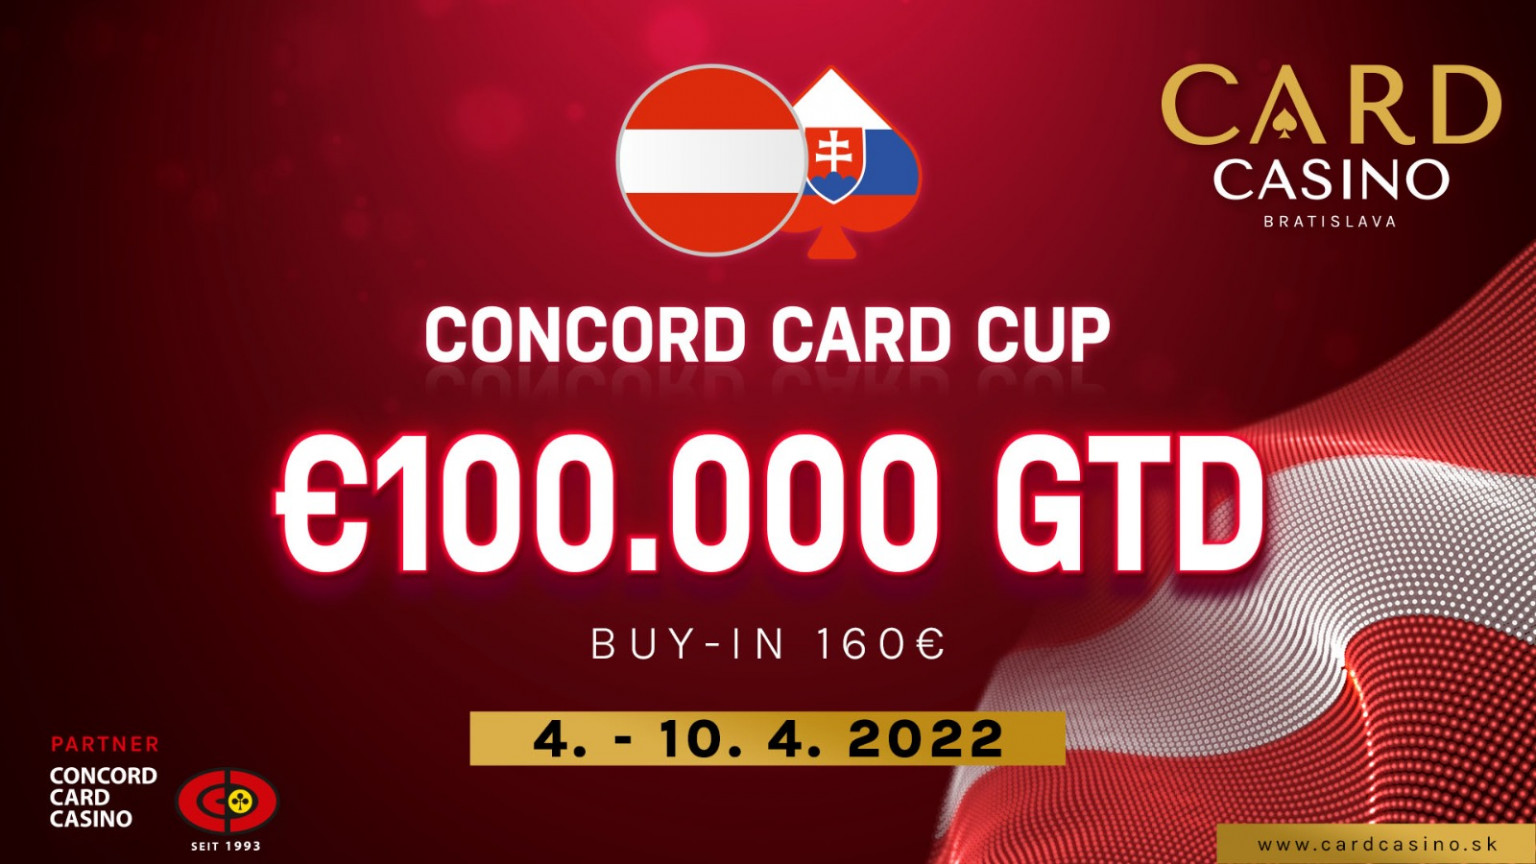 Die Legende ist zurück in einer neuen Umgebung. Bratislava begrüßt den Concord Card Cup €100 000